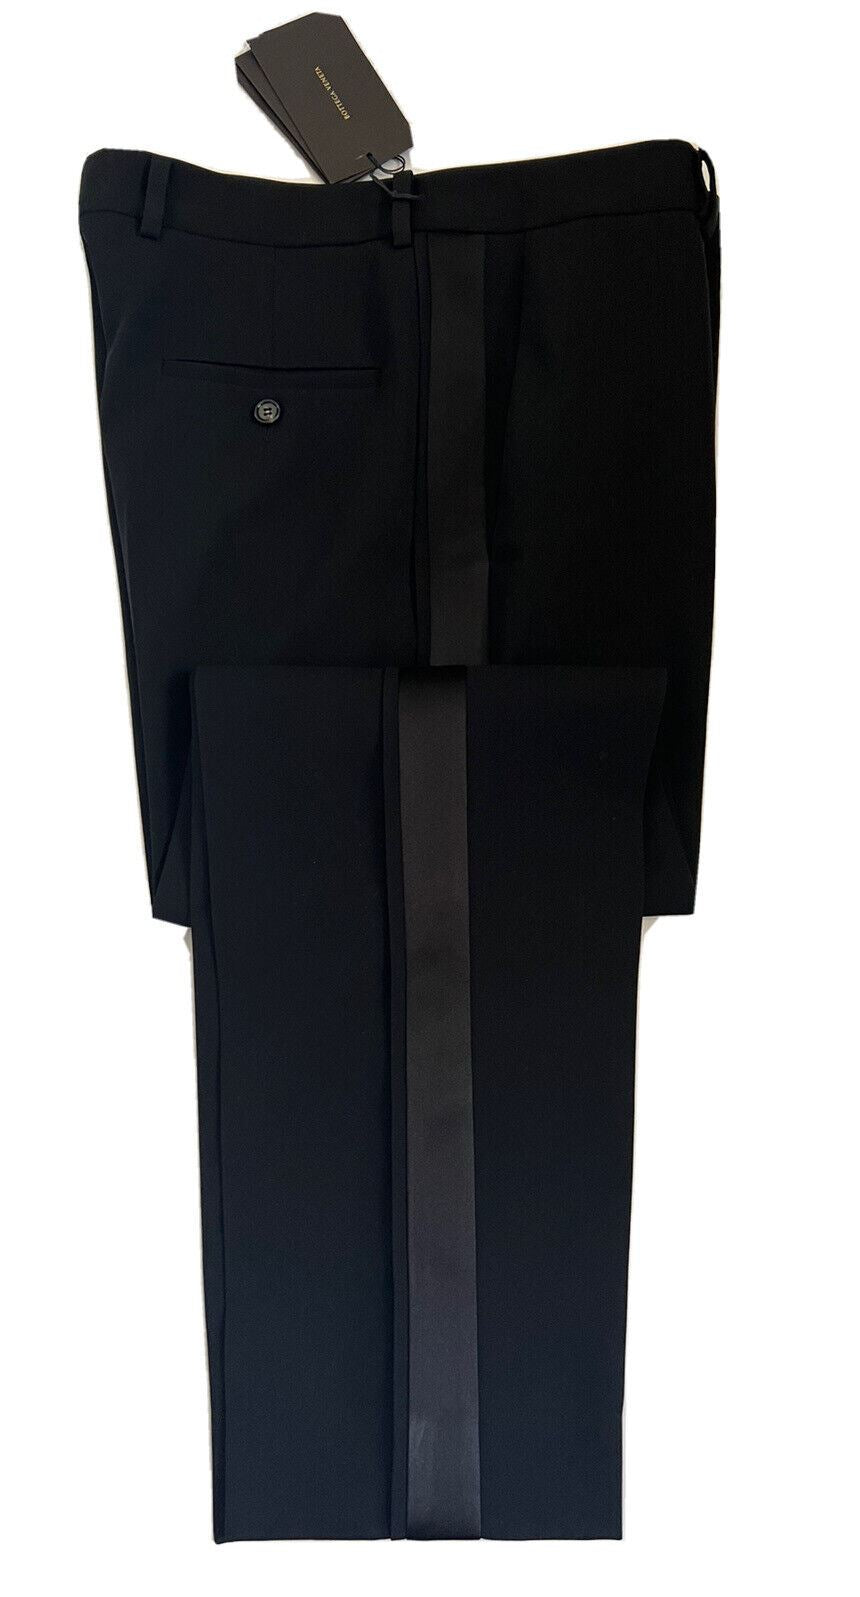 СЗТ 1650 долларов США Bottega Veneta Женские шерстяные брюки-смокинг, черные, размер 4, США (40 евро) 